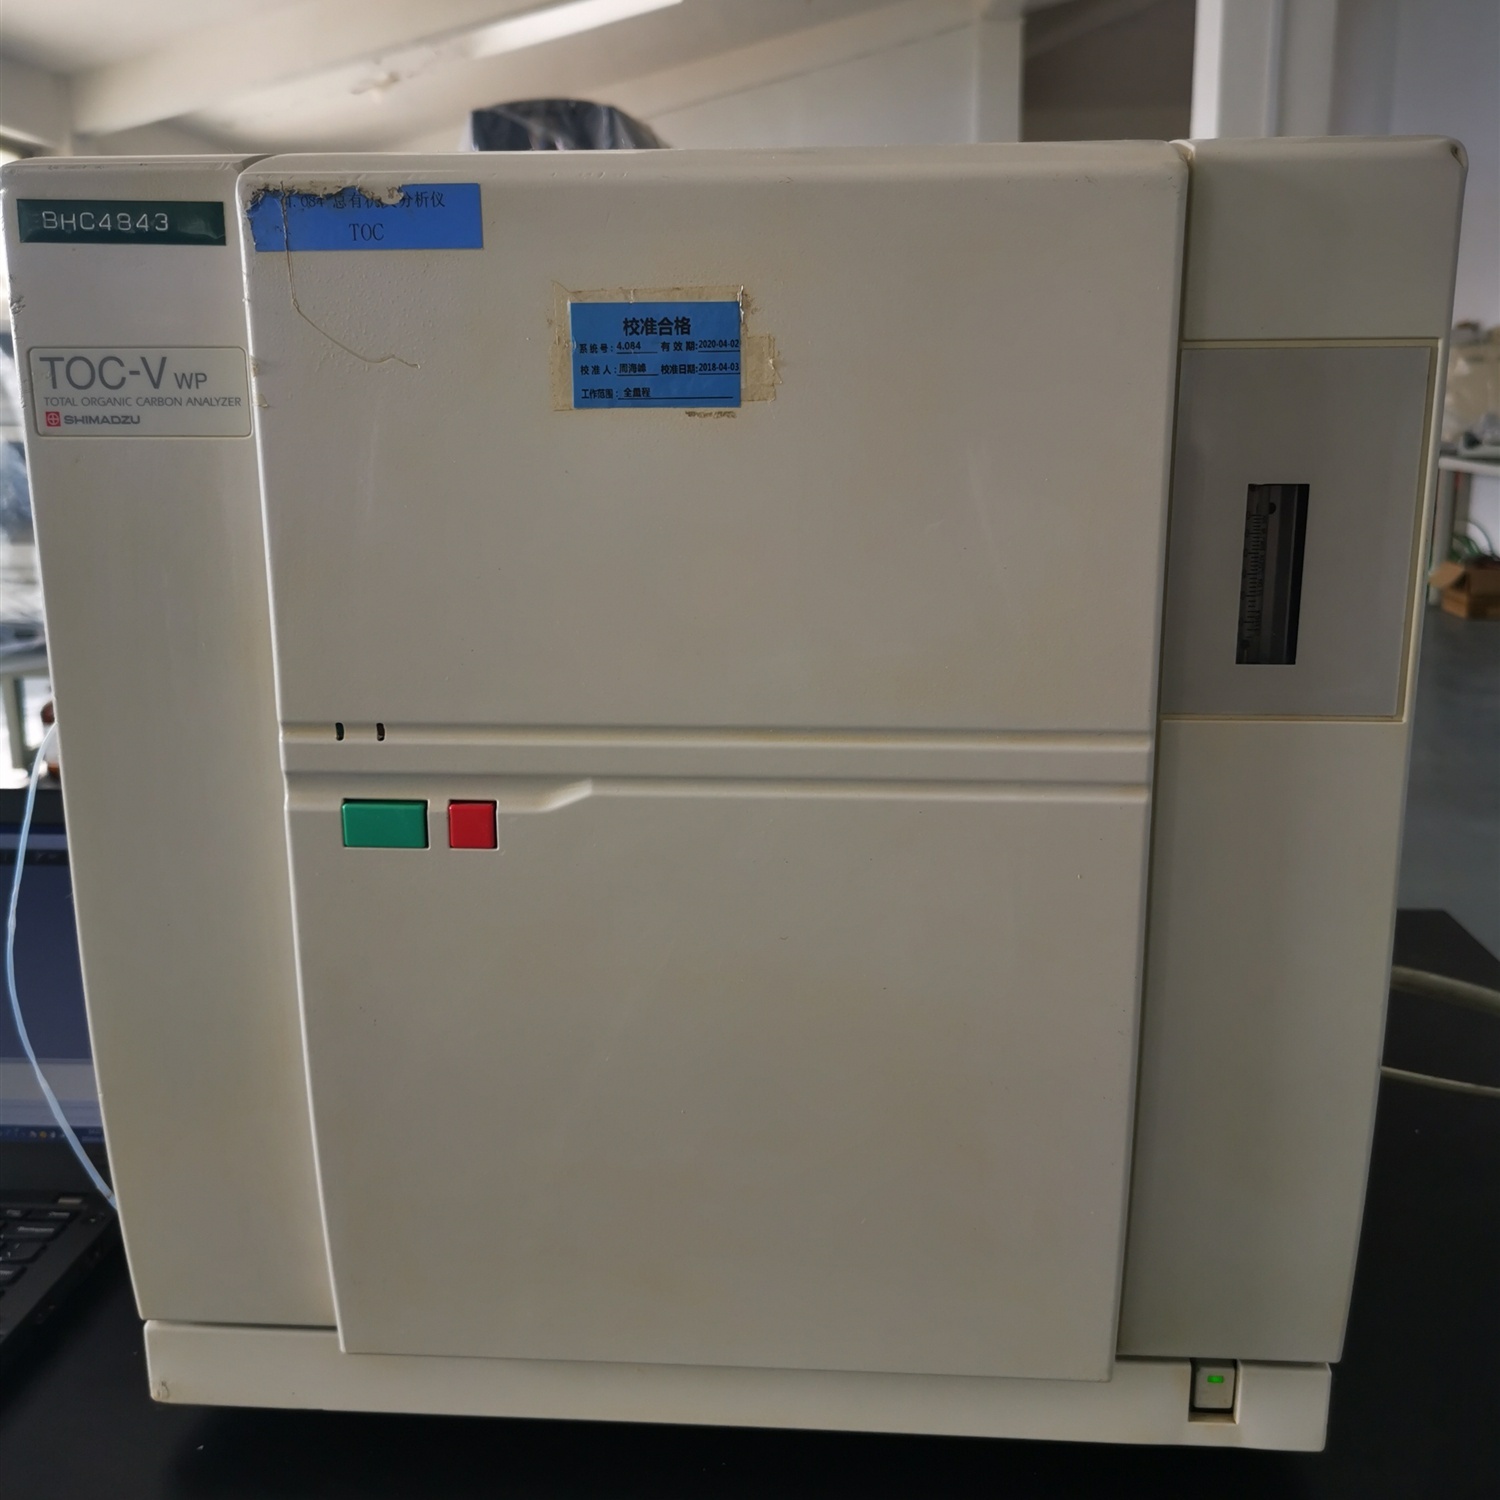 岛津TOC-V wp总有机碳分析仪的图片